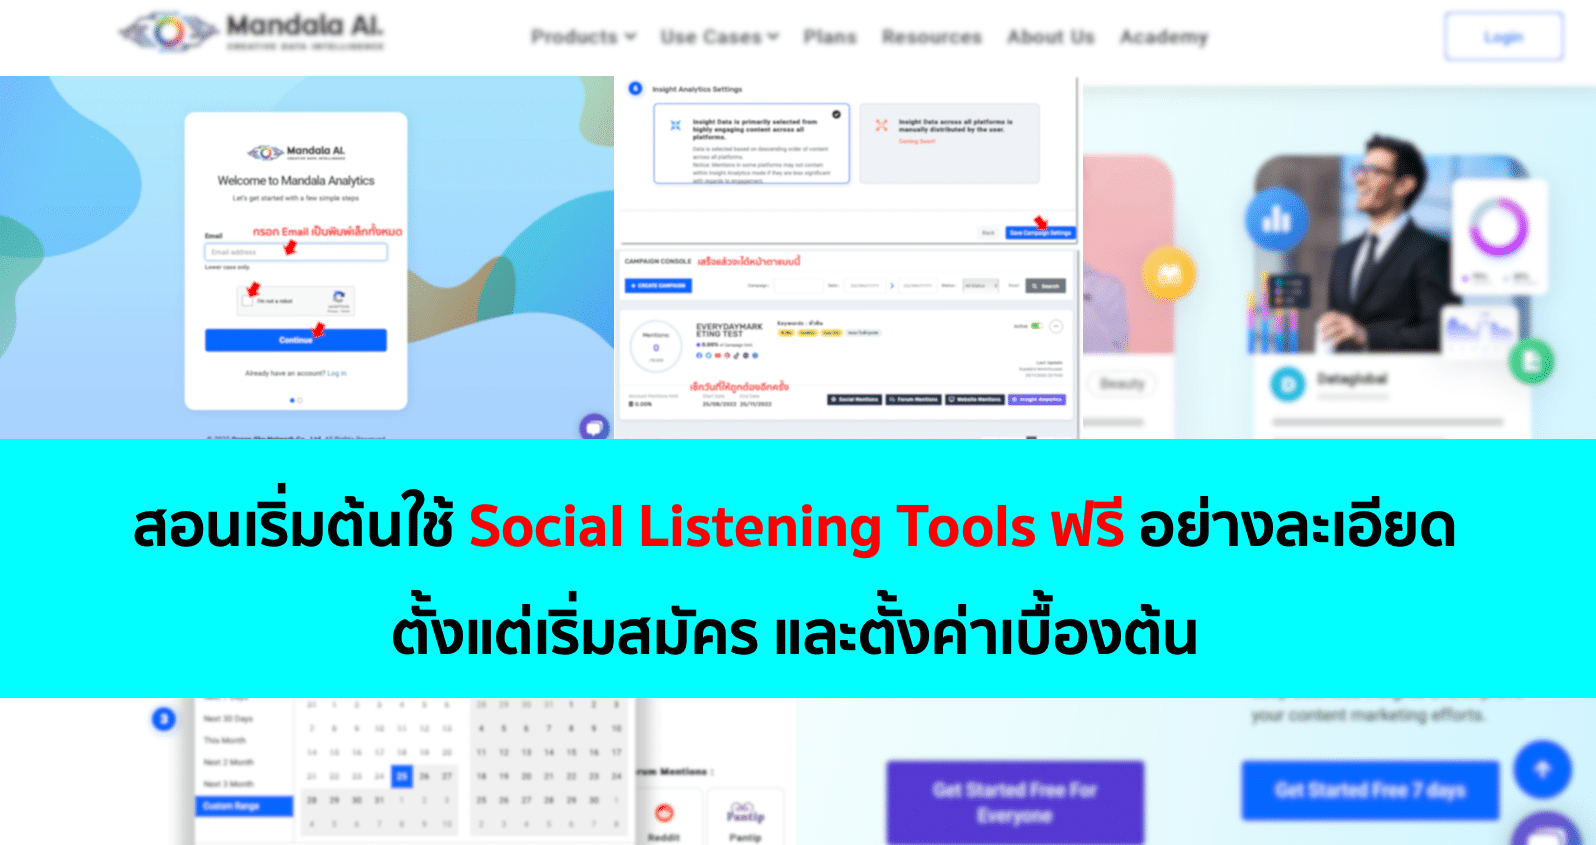 สอนเริ่มต้นใช้ Social Listening Tools ฟรี อย่างละเอียด – Mandala AI.